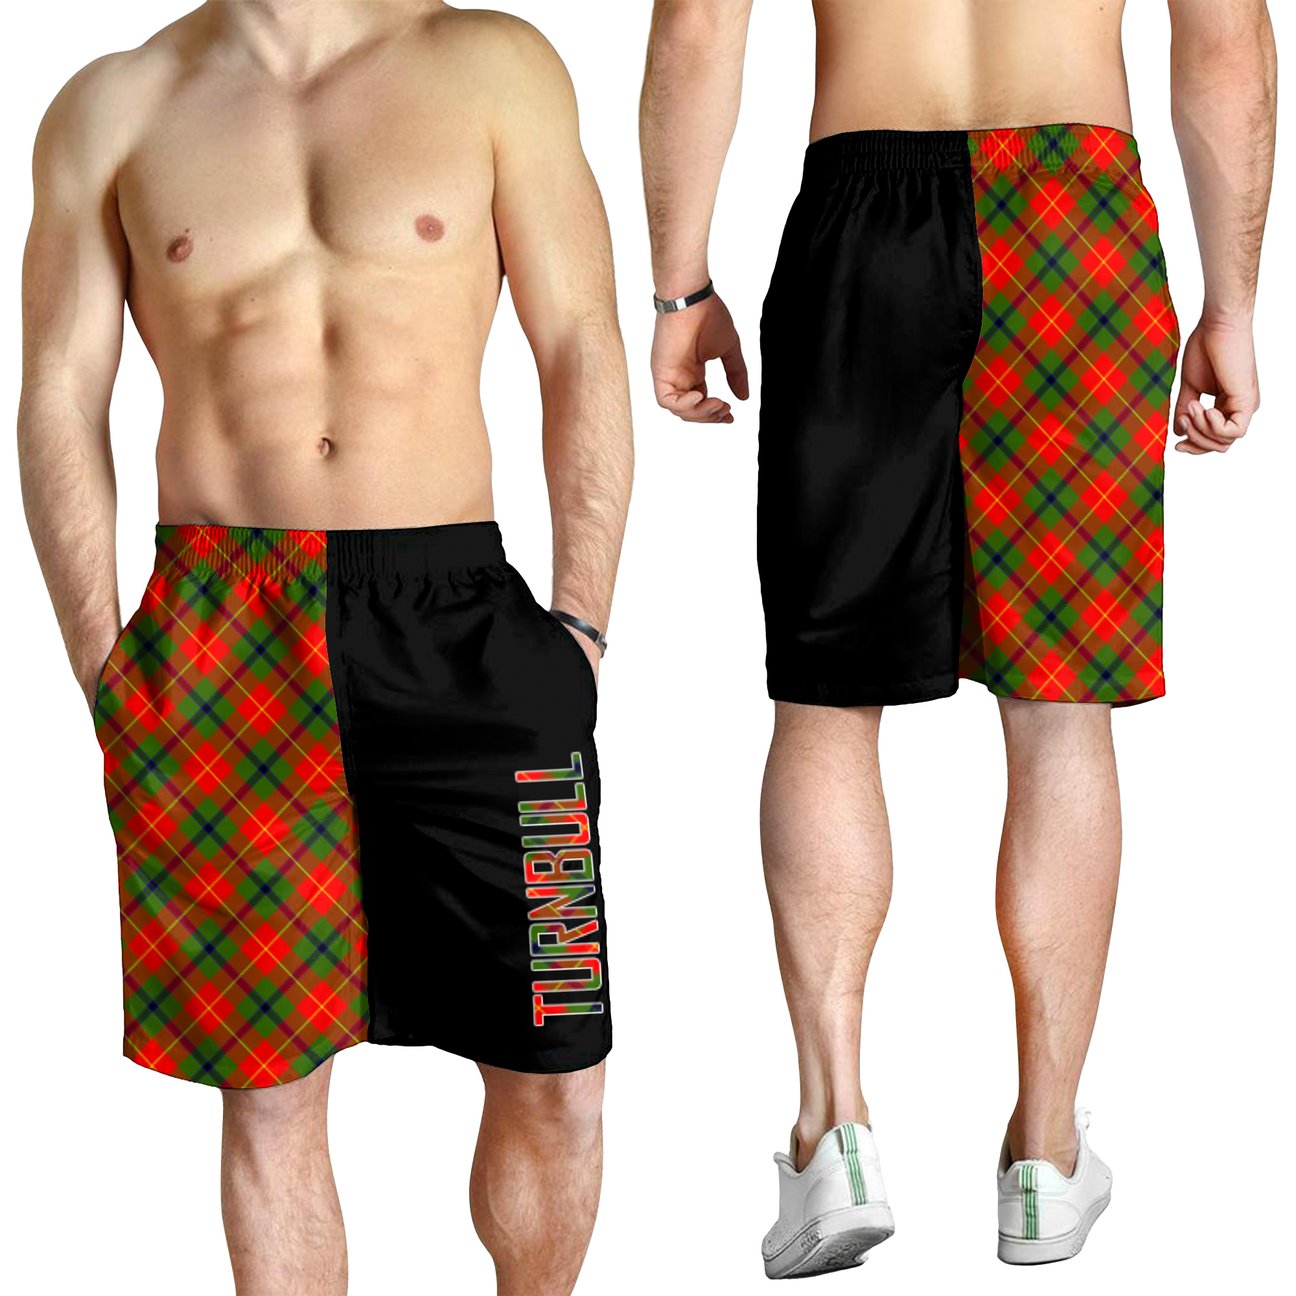 Turnbull Dress Tartan Crest Men's Short - Cross Style